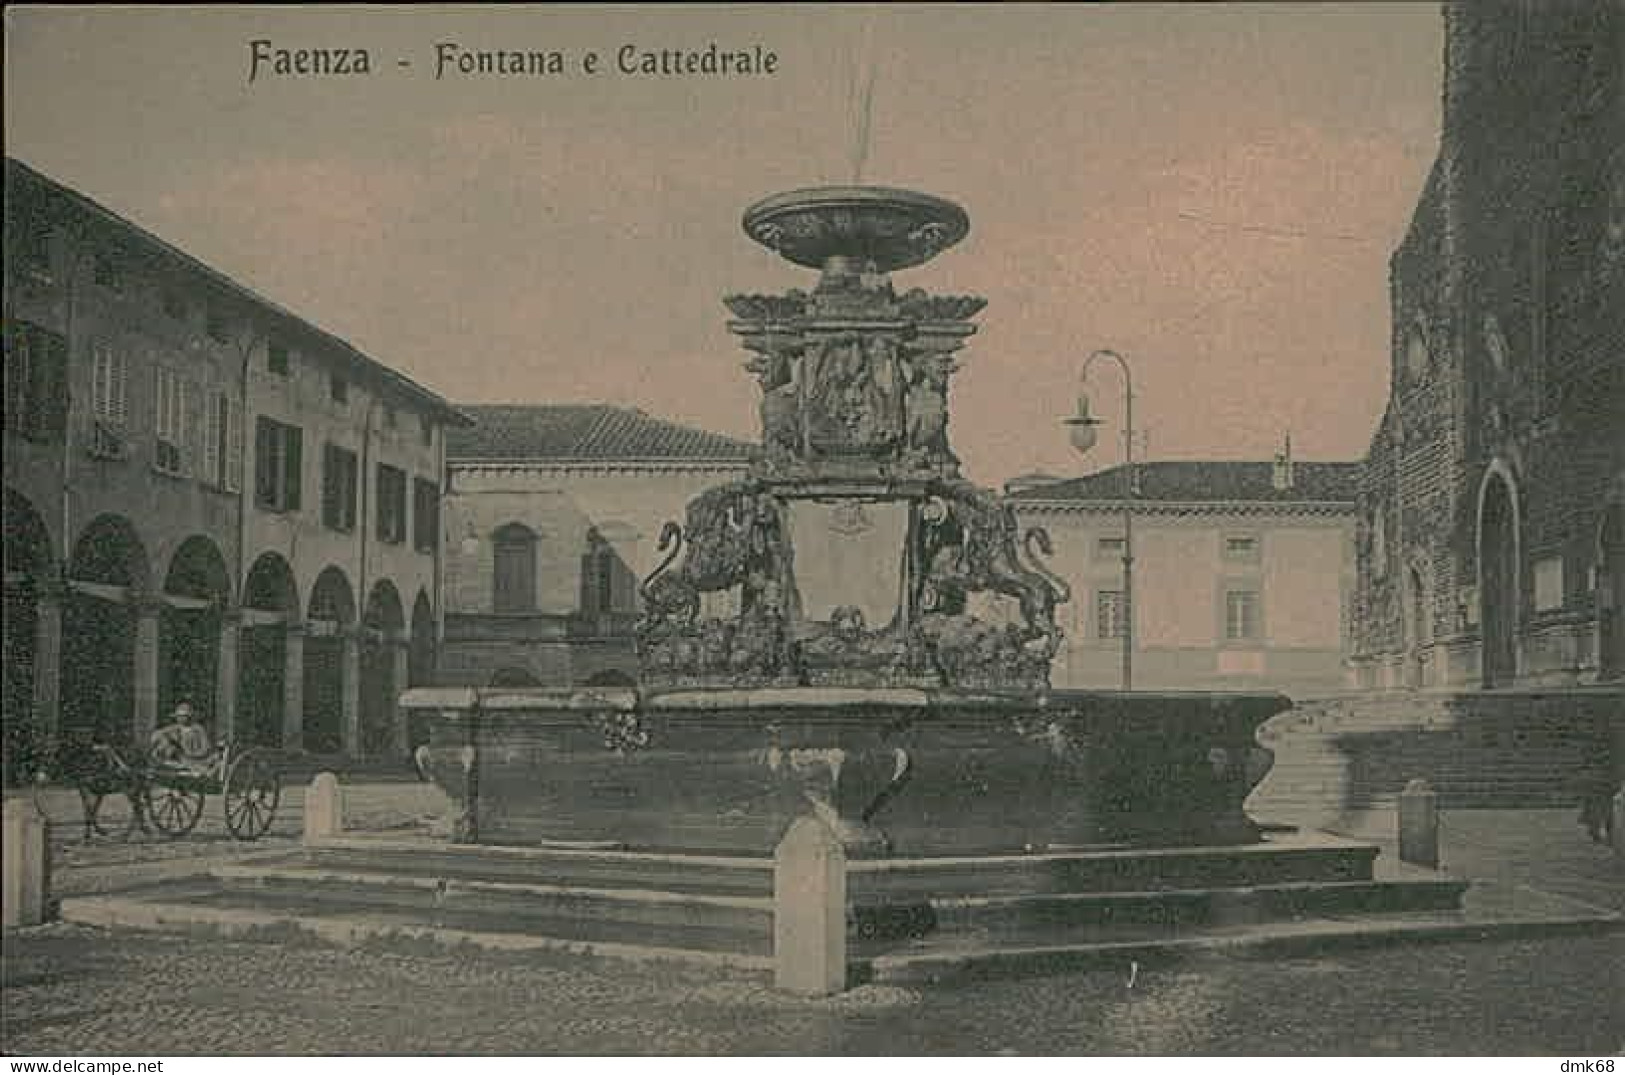 FAENZA - FONTANA E CATTEDRALE - EDIZIONE F.LLI MORINI - 1920s  (15187) - Faenza